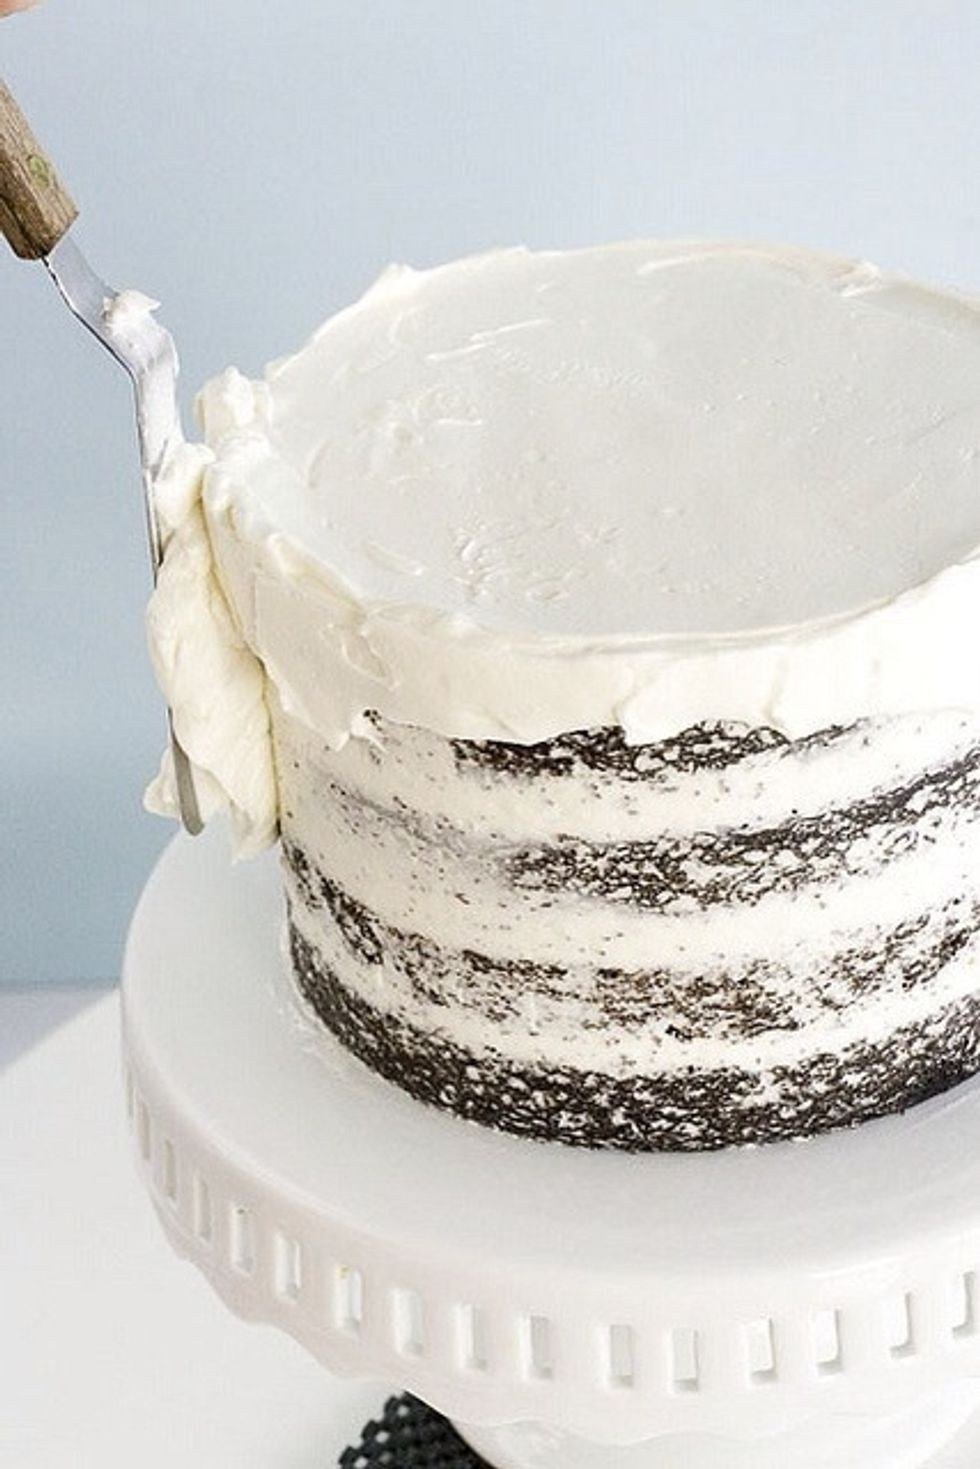 Выравнивание и украшение торта кремом чиз. Выравние торта кремом чиз. Торт выровненный кремом. Крем для покрытия торта. Торт покрытый кремом.